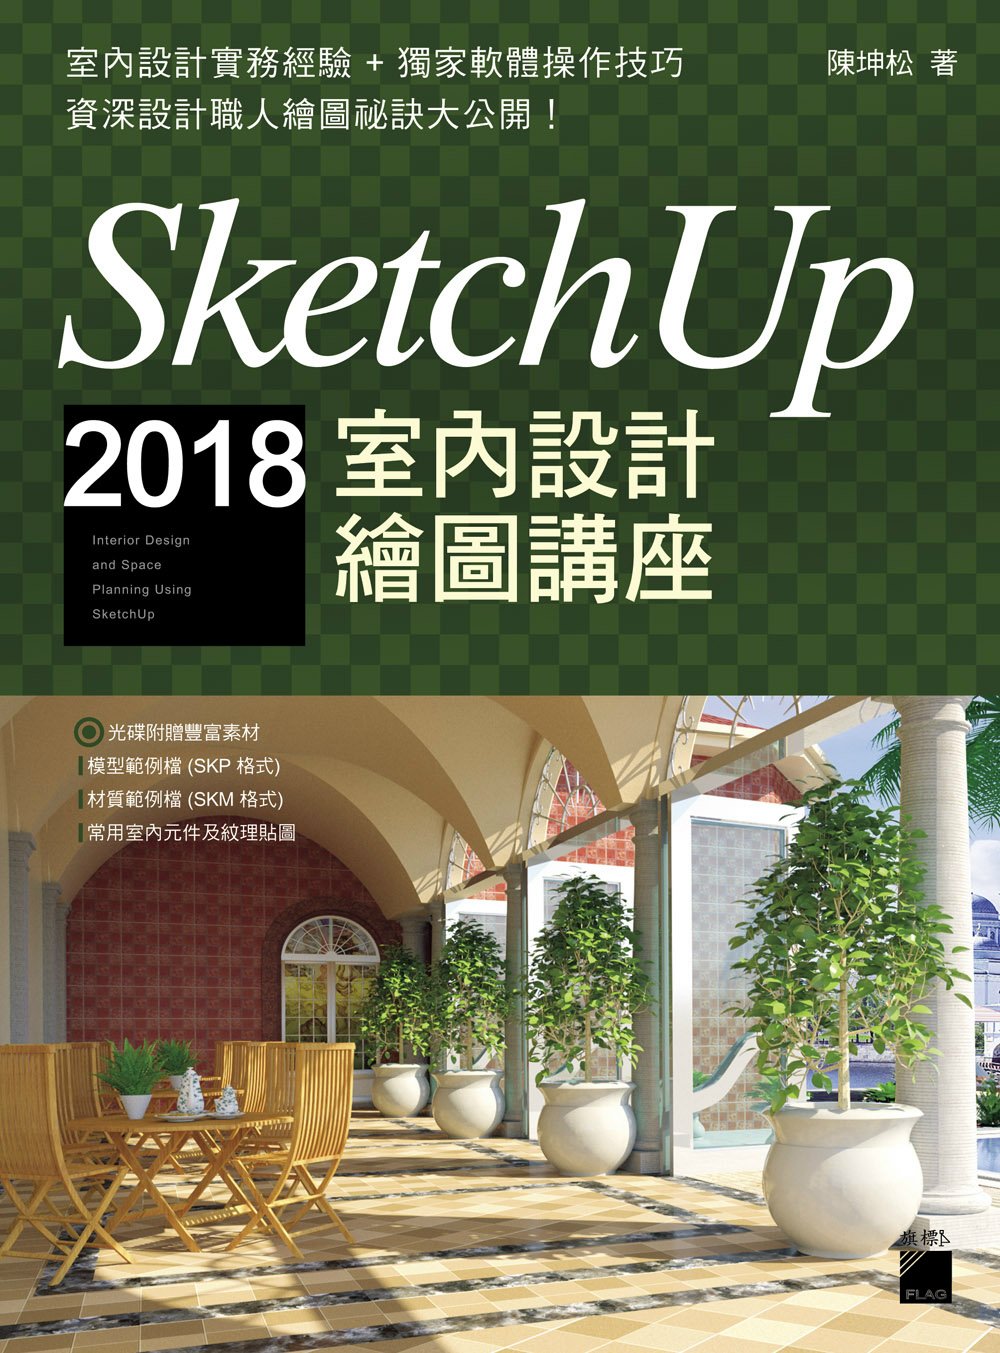 SketchUp 2018 室內設計繪圖講座